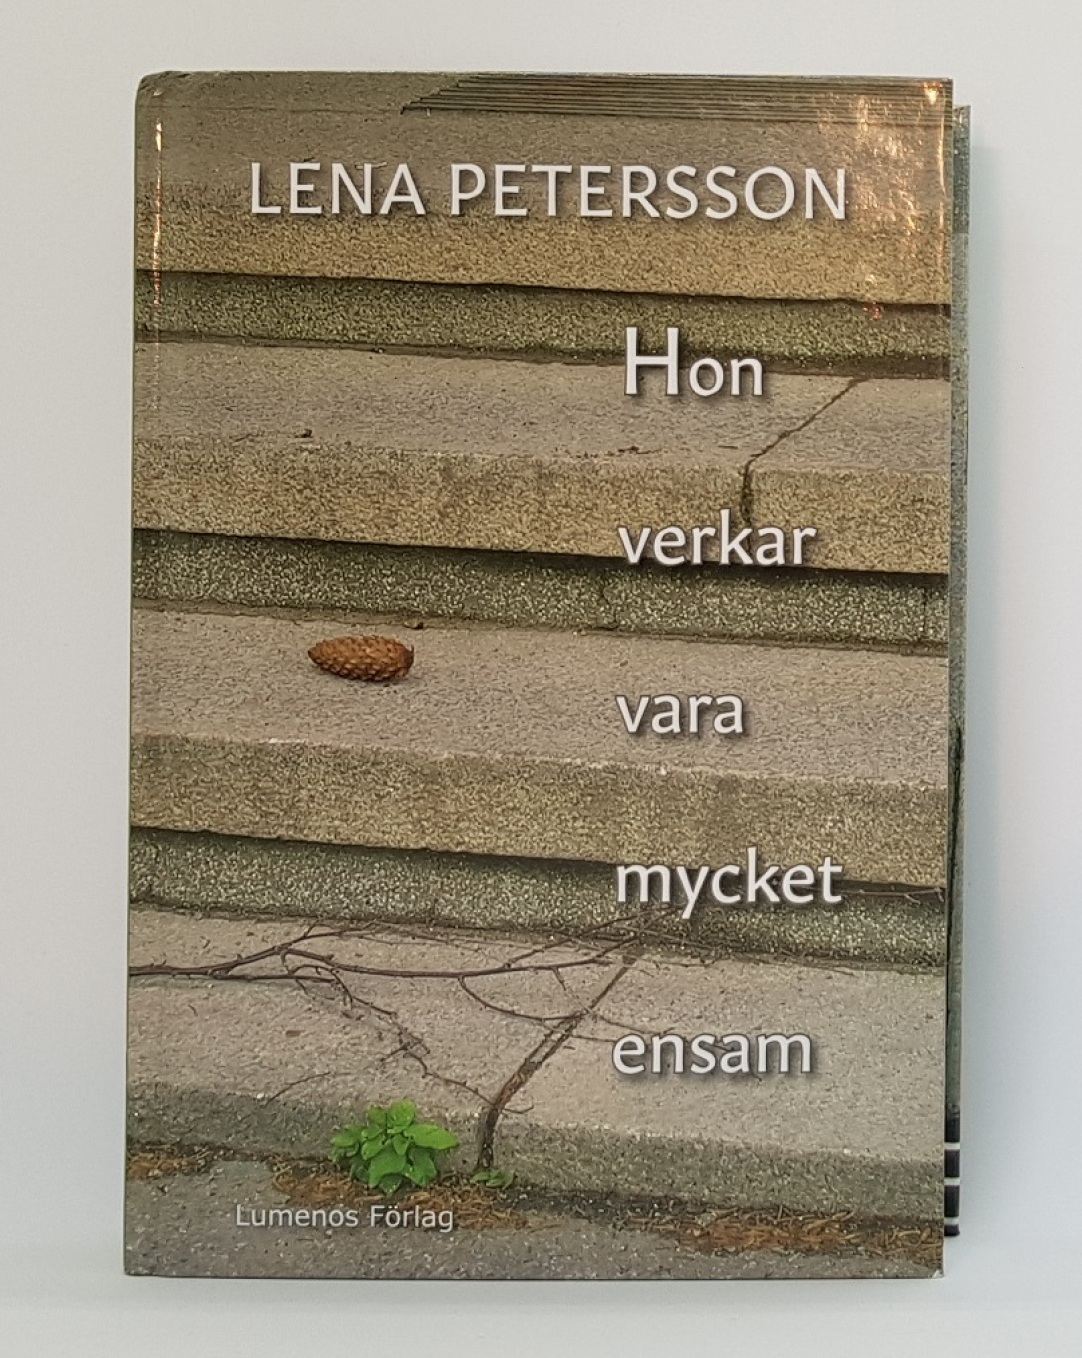 "Hon verkar vara mycket ensam". Stående bok. Foto: Lena Petersson.